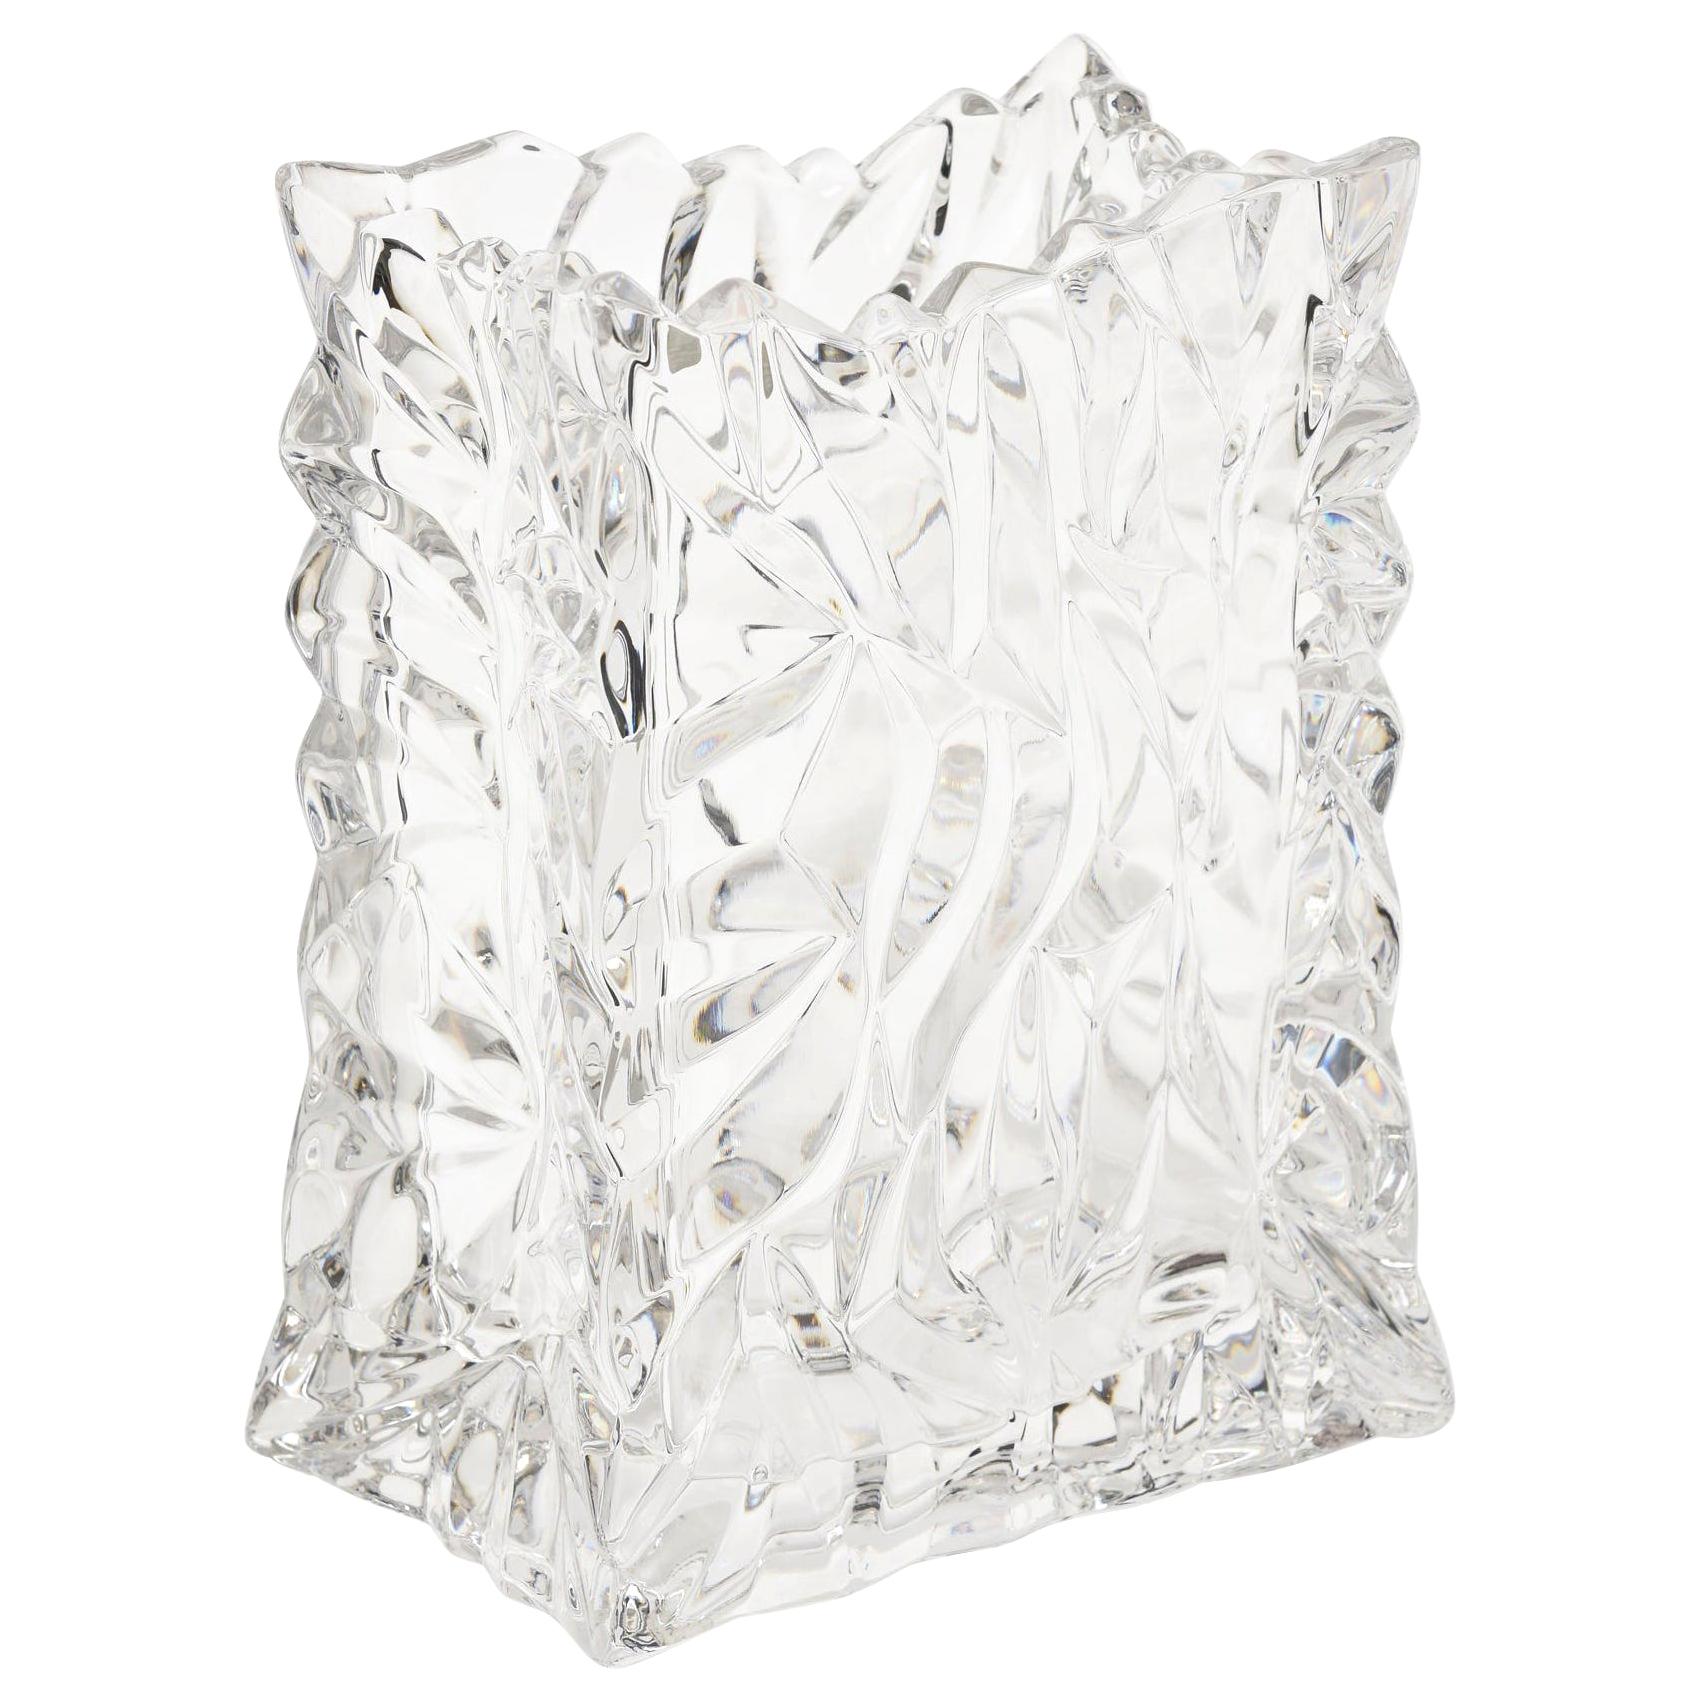 Rosenthal Crystal Paper Bag Glass Vase Vintage